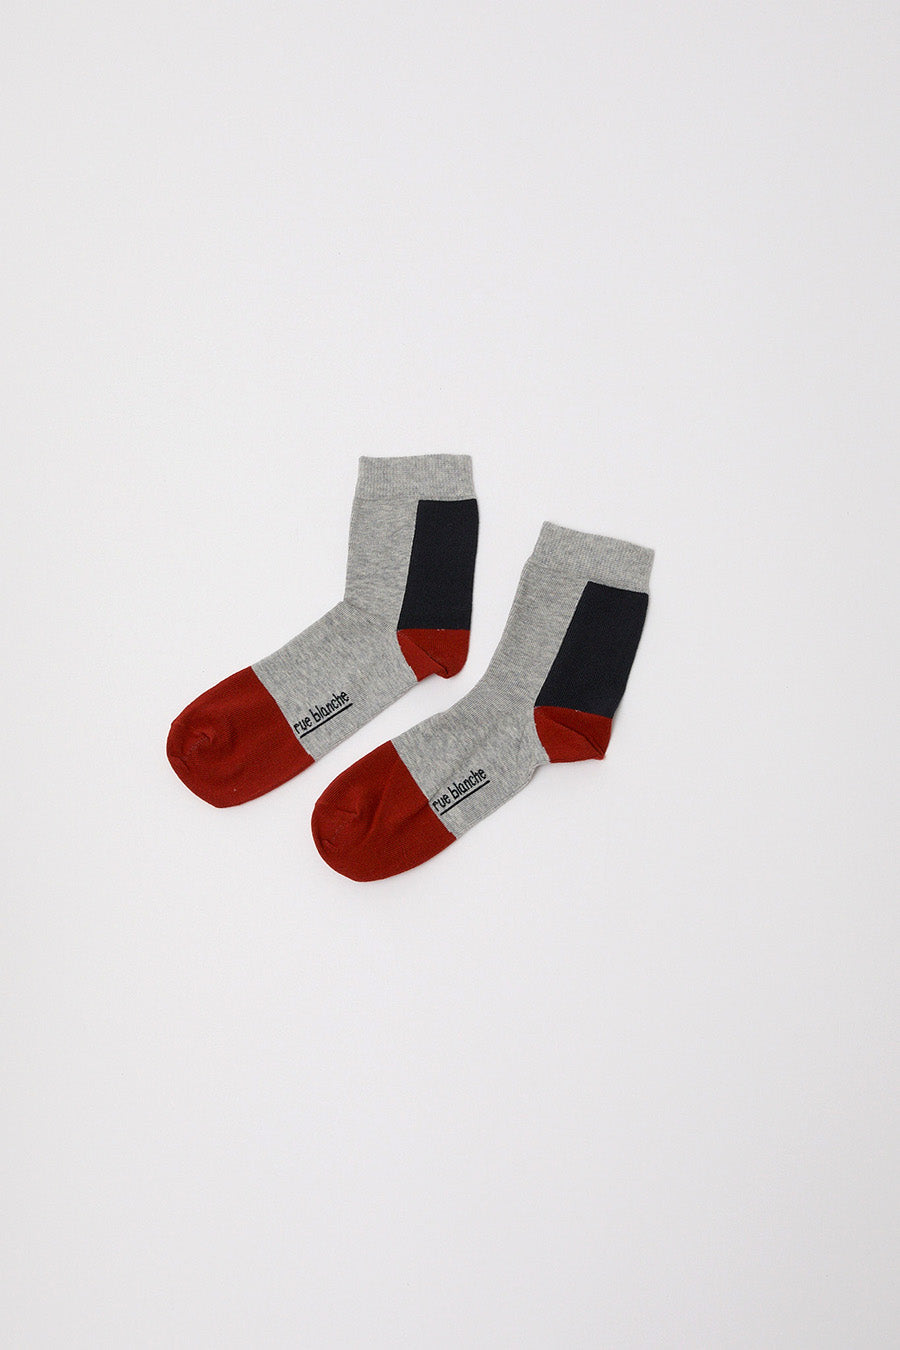 Rue Blanche Multi Socks in Grey Melange